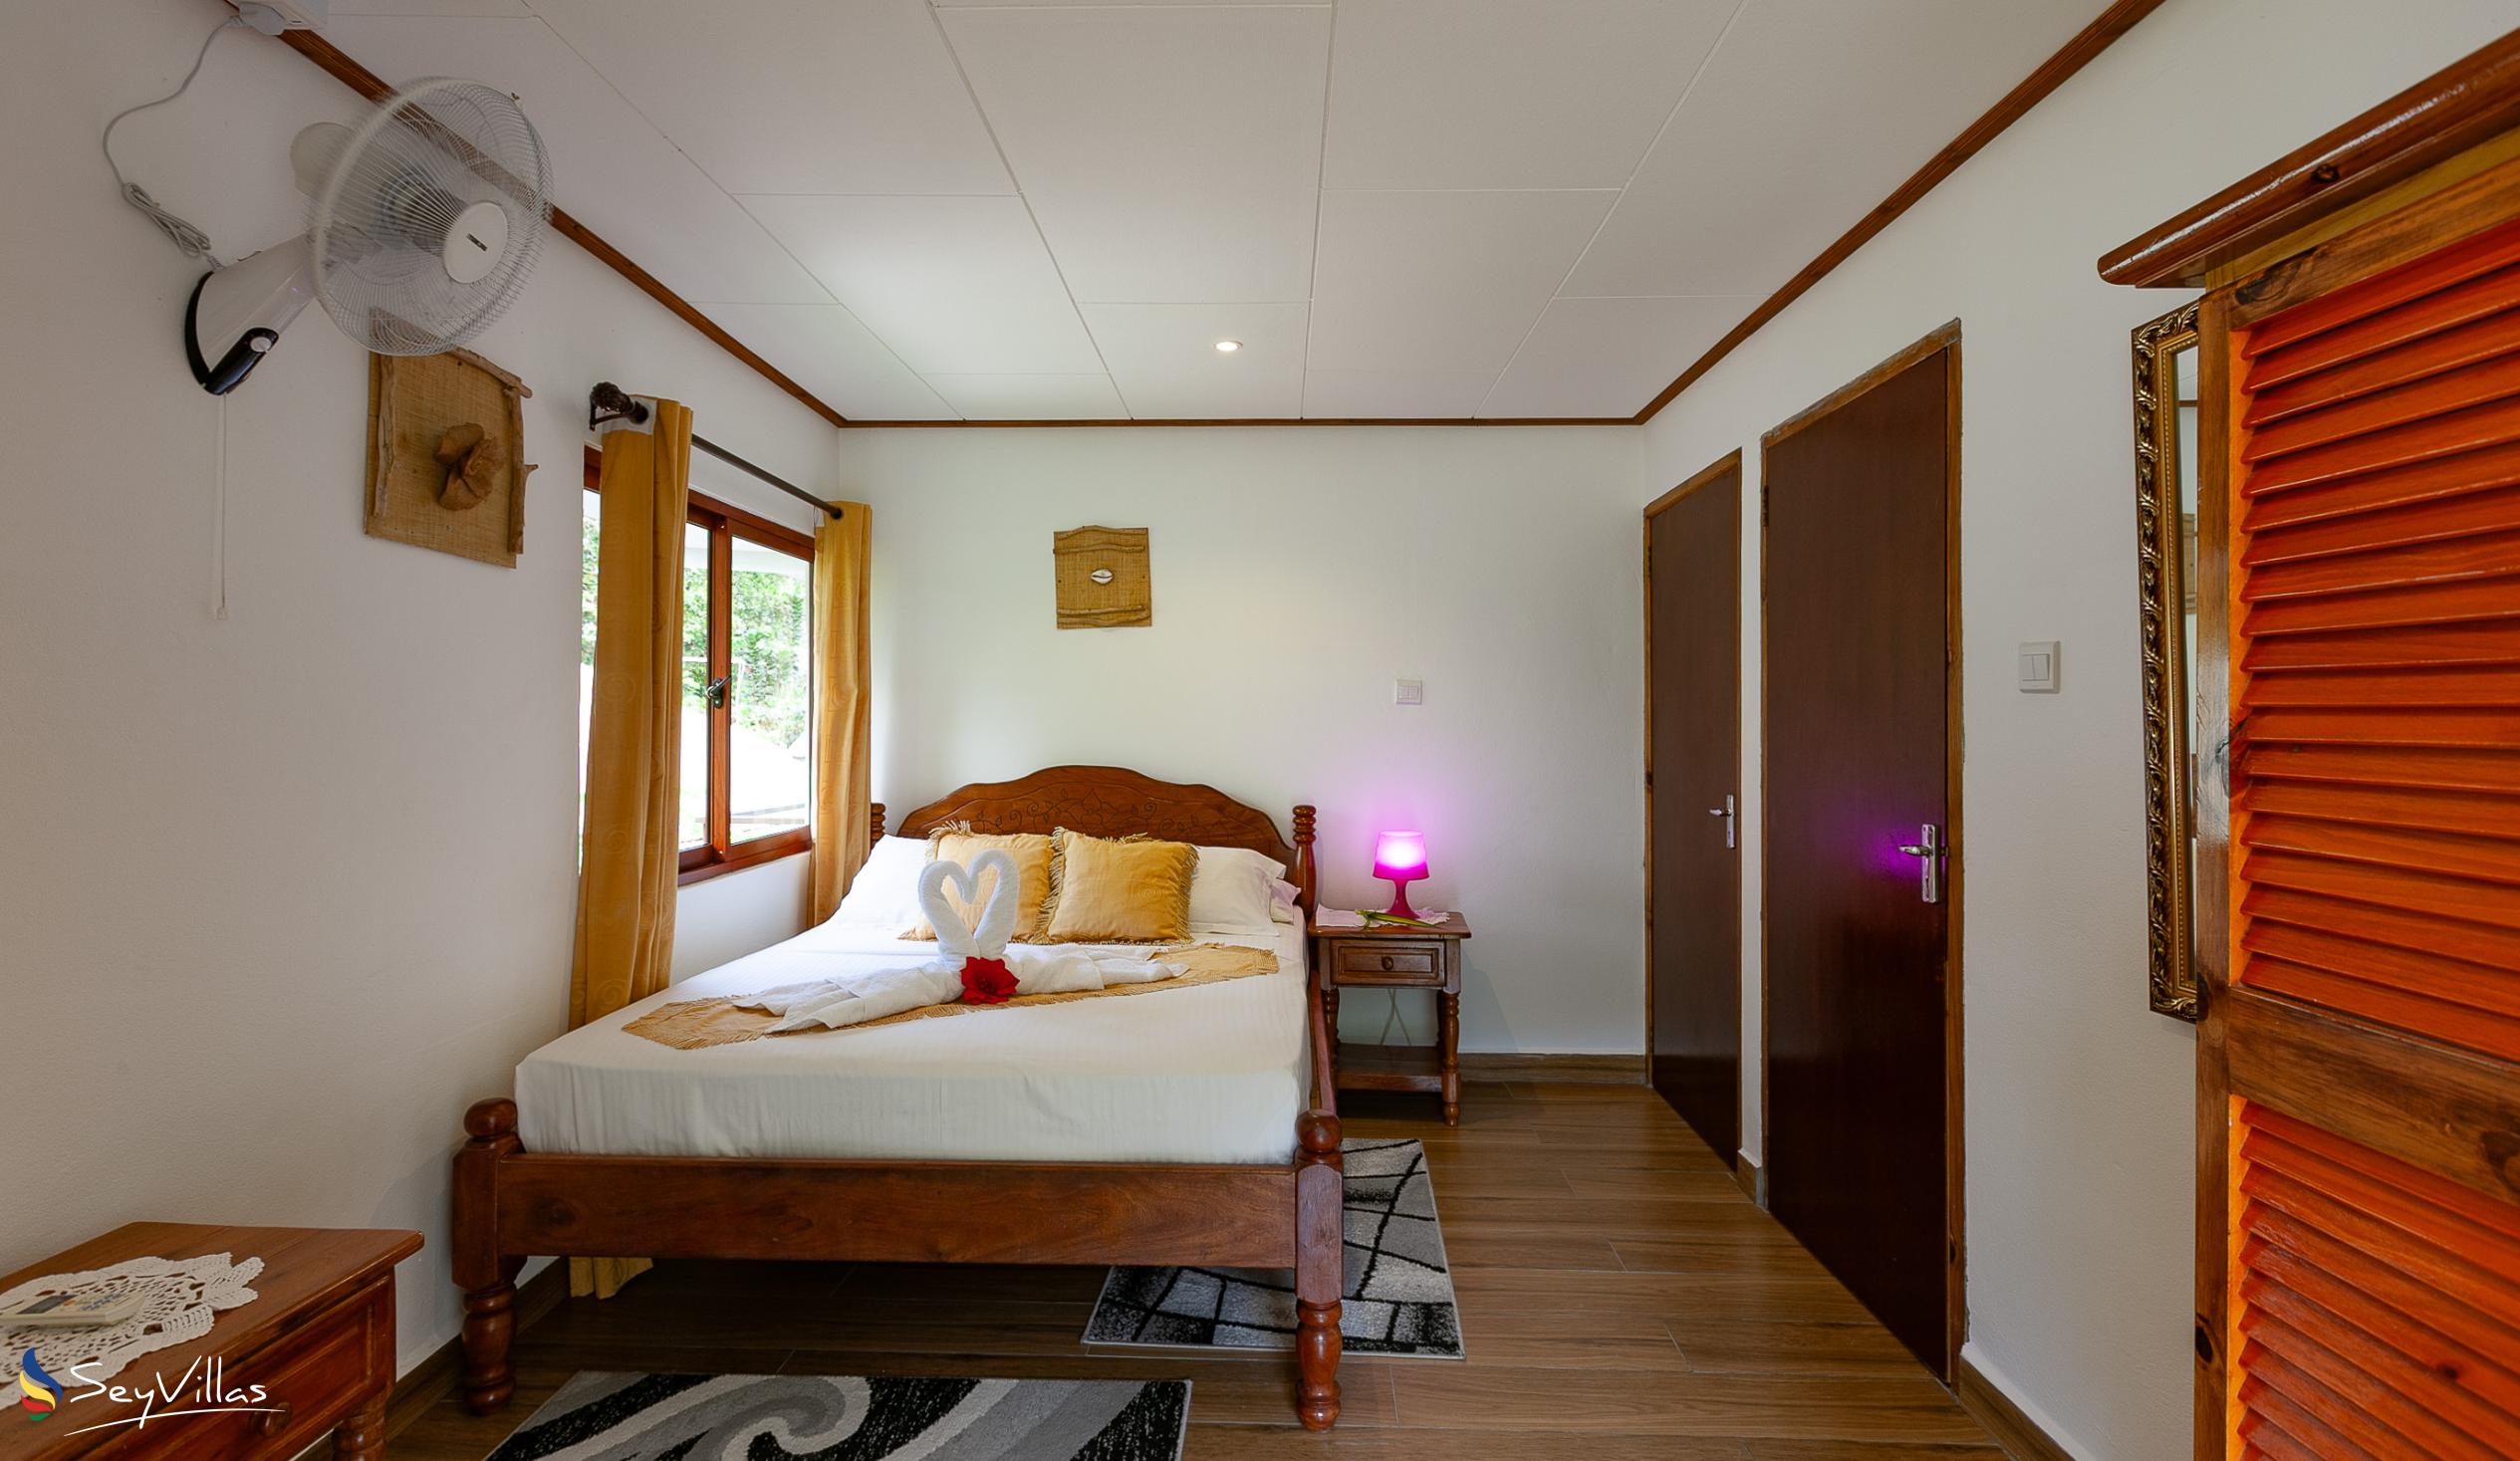 Photo 97: Tannette's Villa - Deluxe Room - La Digue (Seychelles)